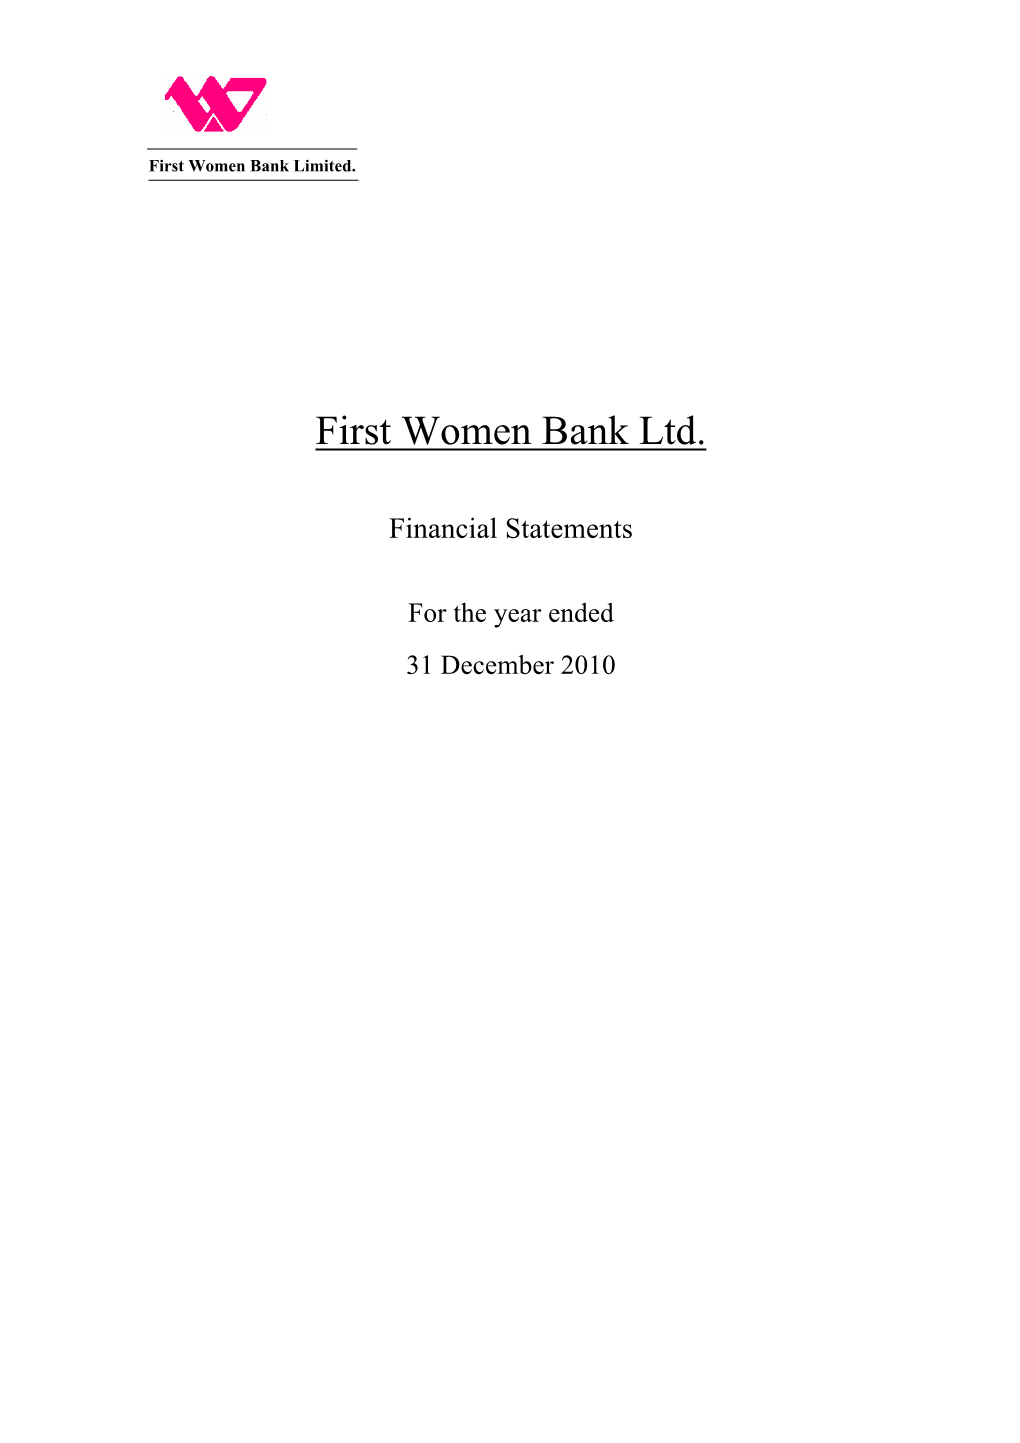 FWBL Annual Account 2010